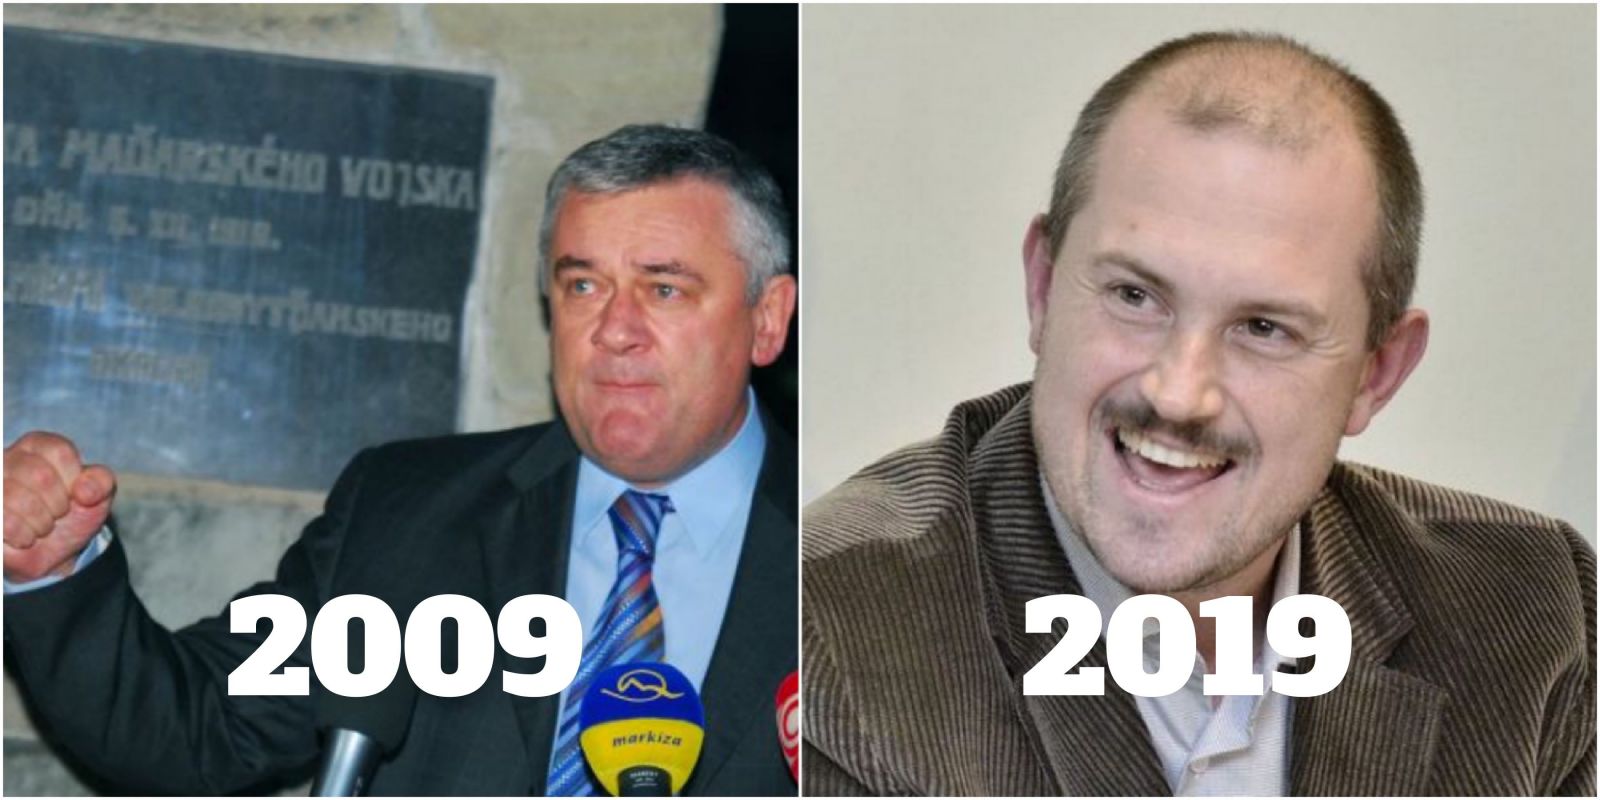 Čo všetko sa za posledných 10 rokov na Slovensku nezmenilo, aj keď by sme veľmi chceli?